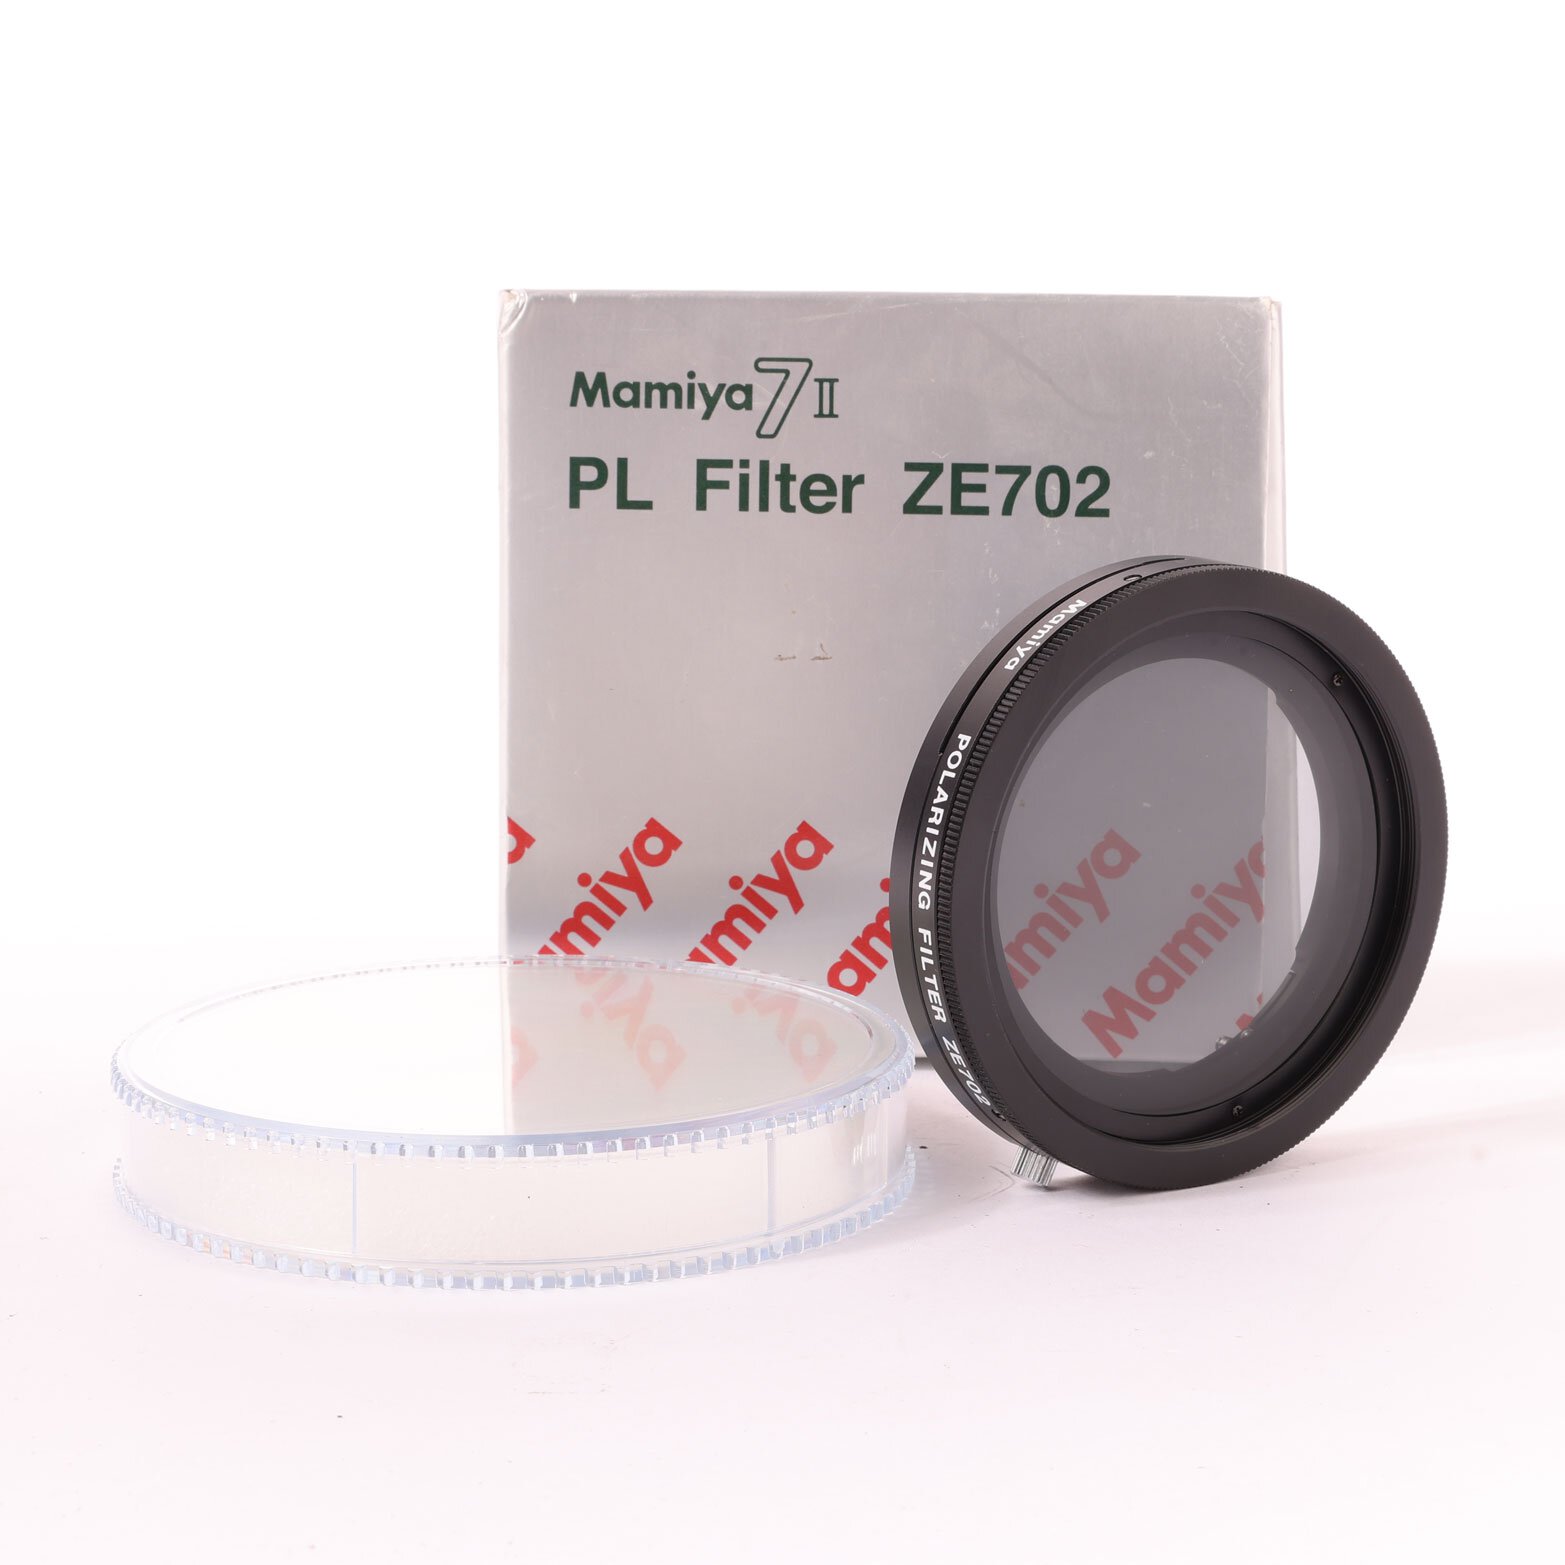 Mamiya 7II PL Filter ZE702